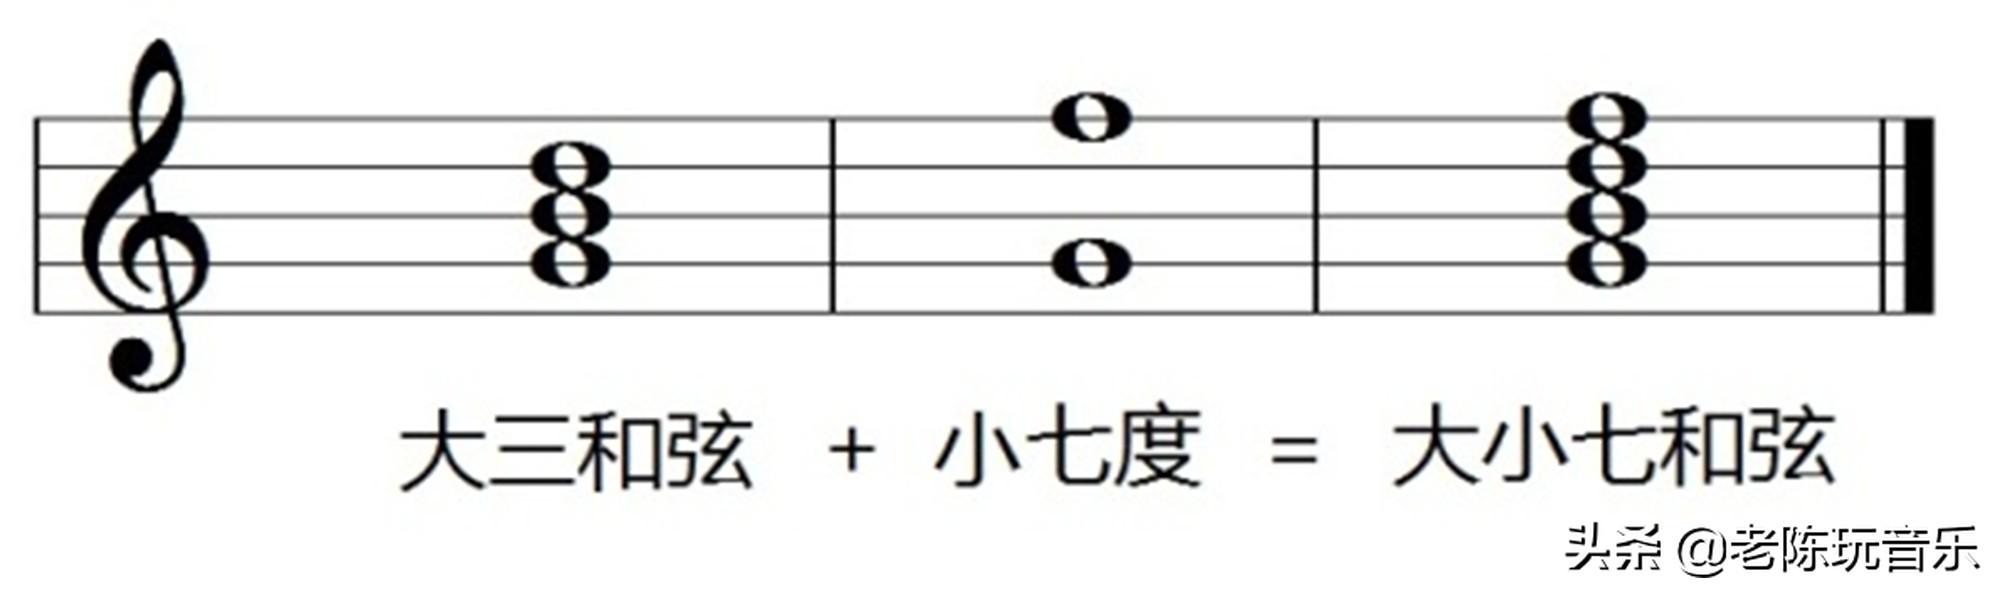 从和声学方面看:大调的主和弦是大三和弦.